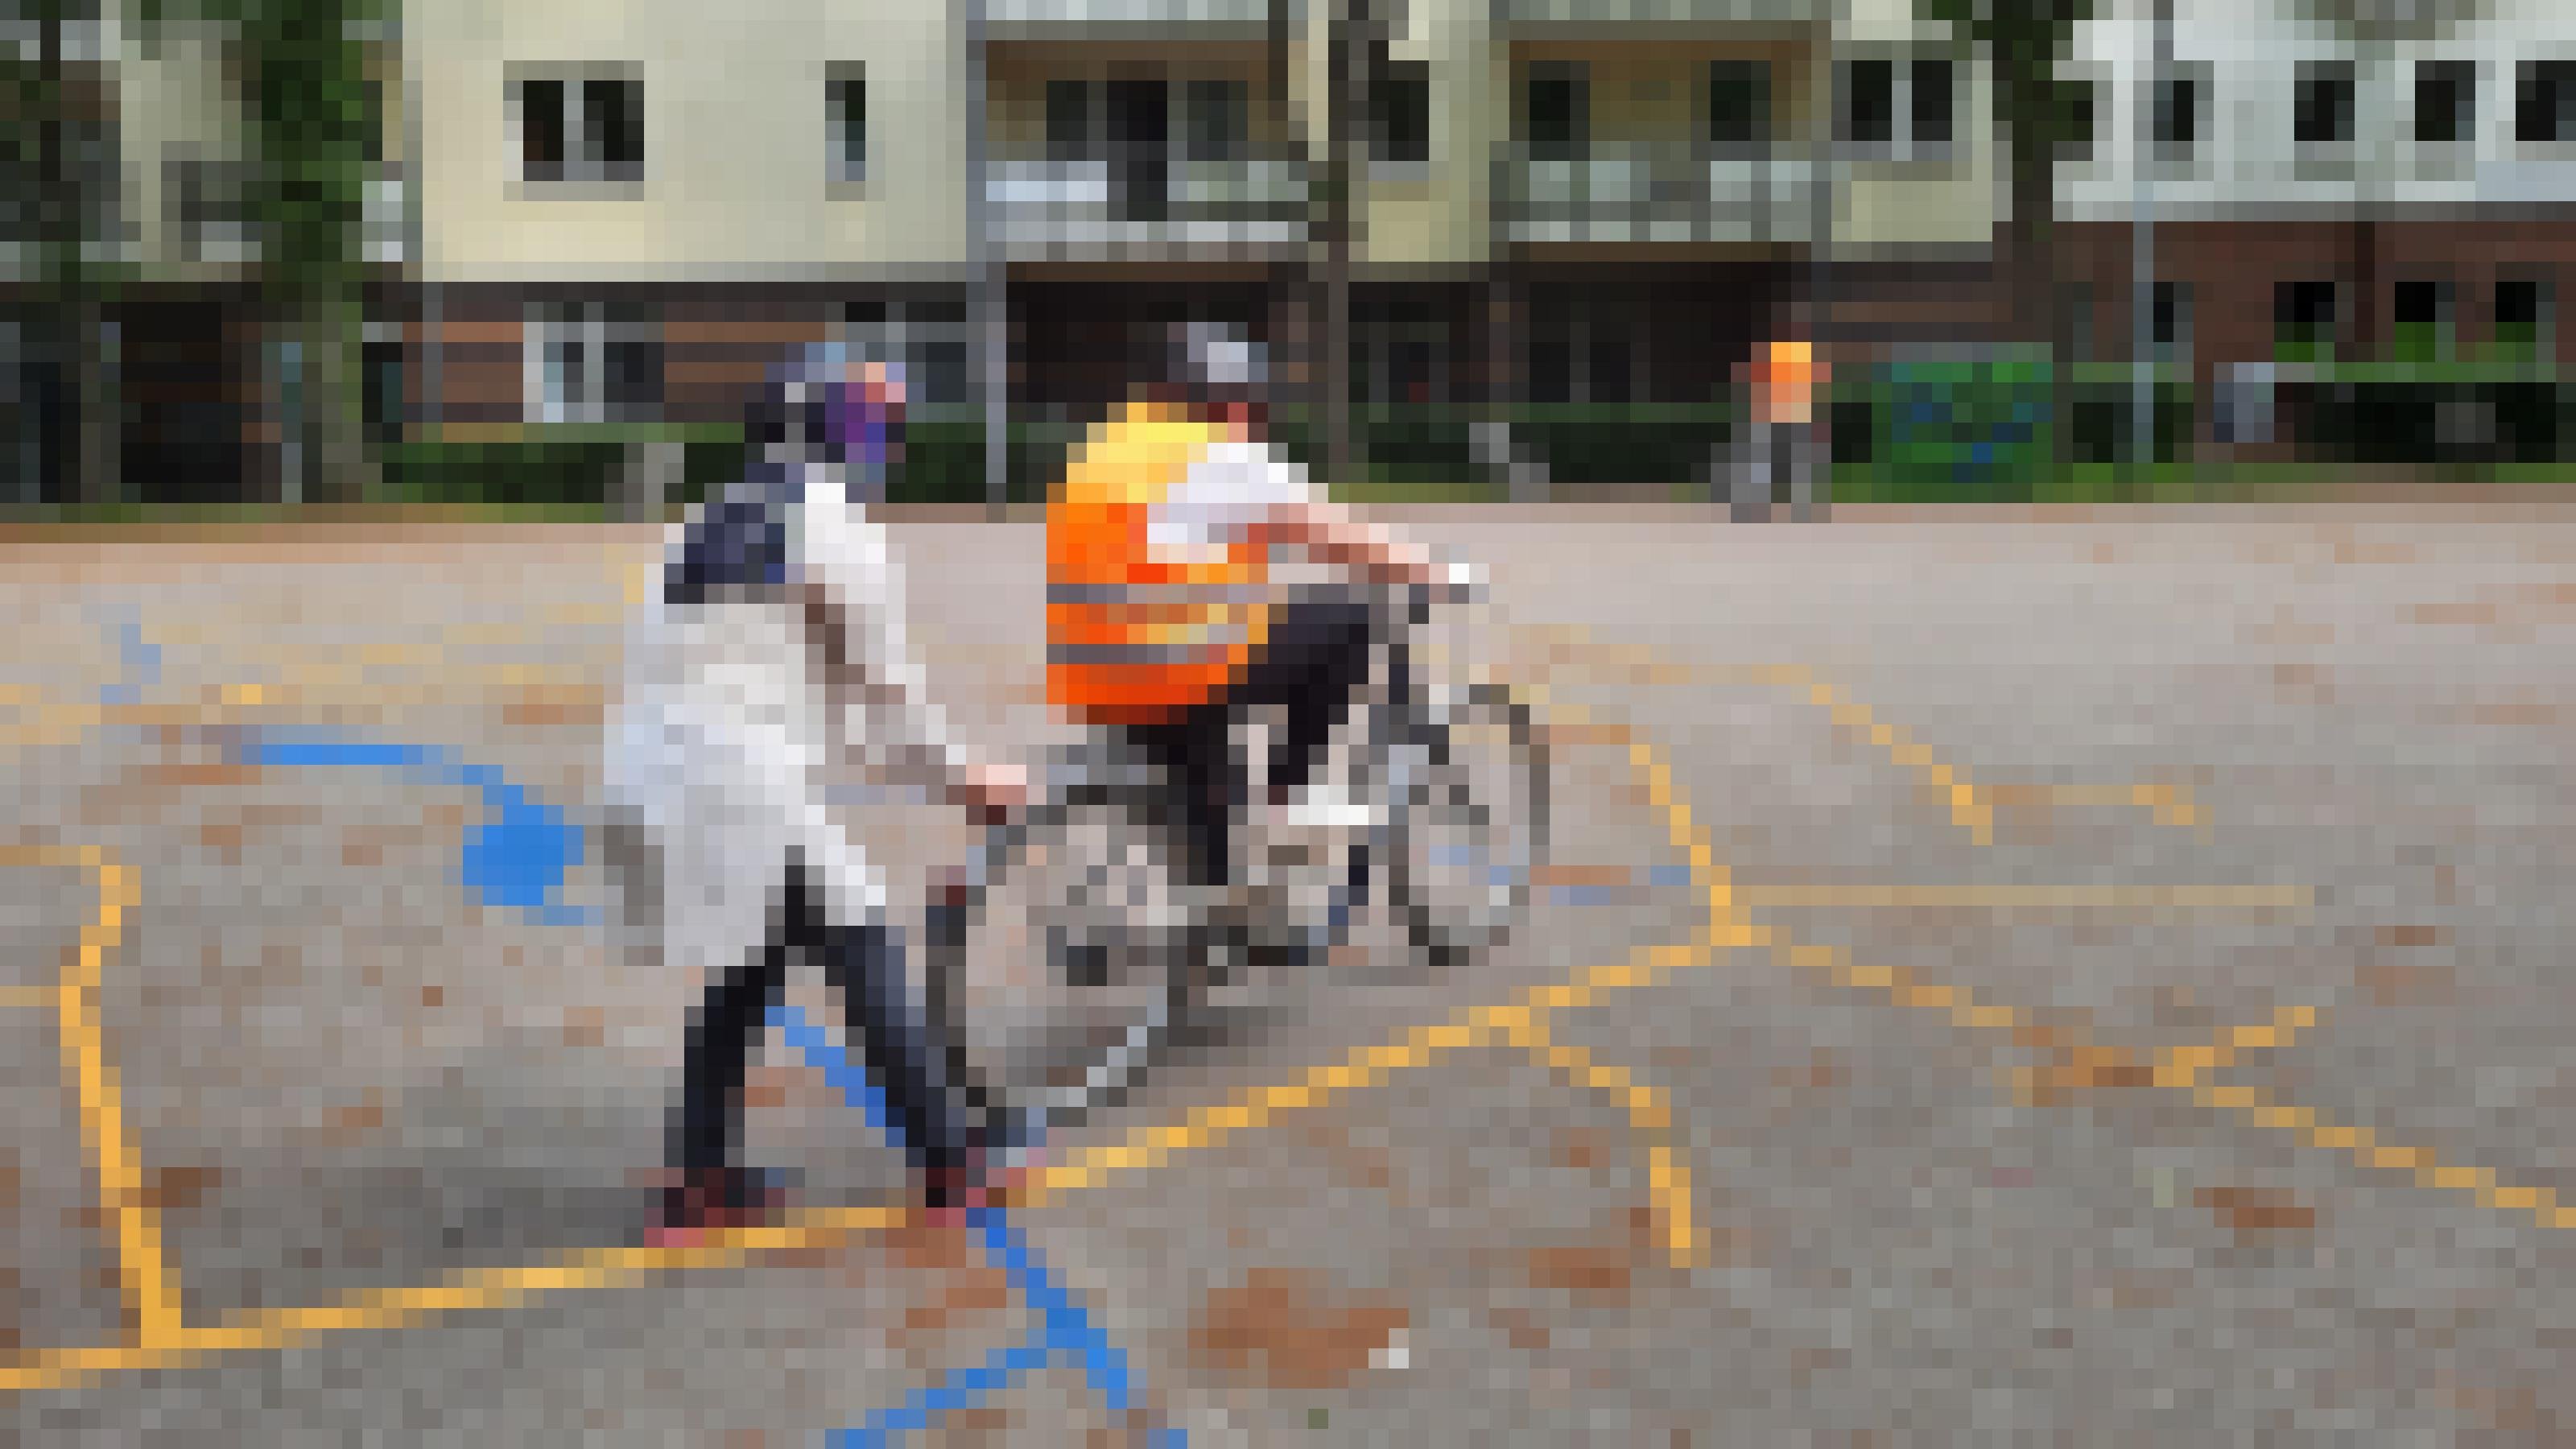 Eine Frau hält den Gepäckträger eines Fahrrads fest auf dem eine andere Frau sitzt.